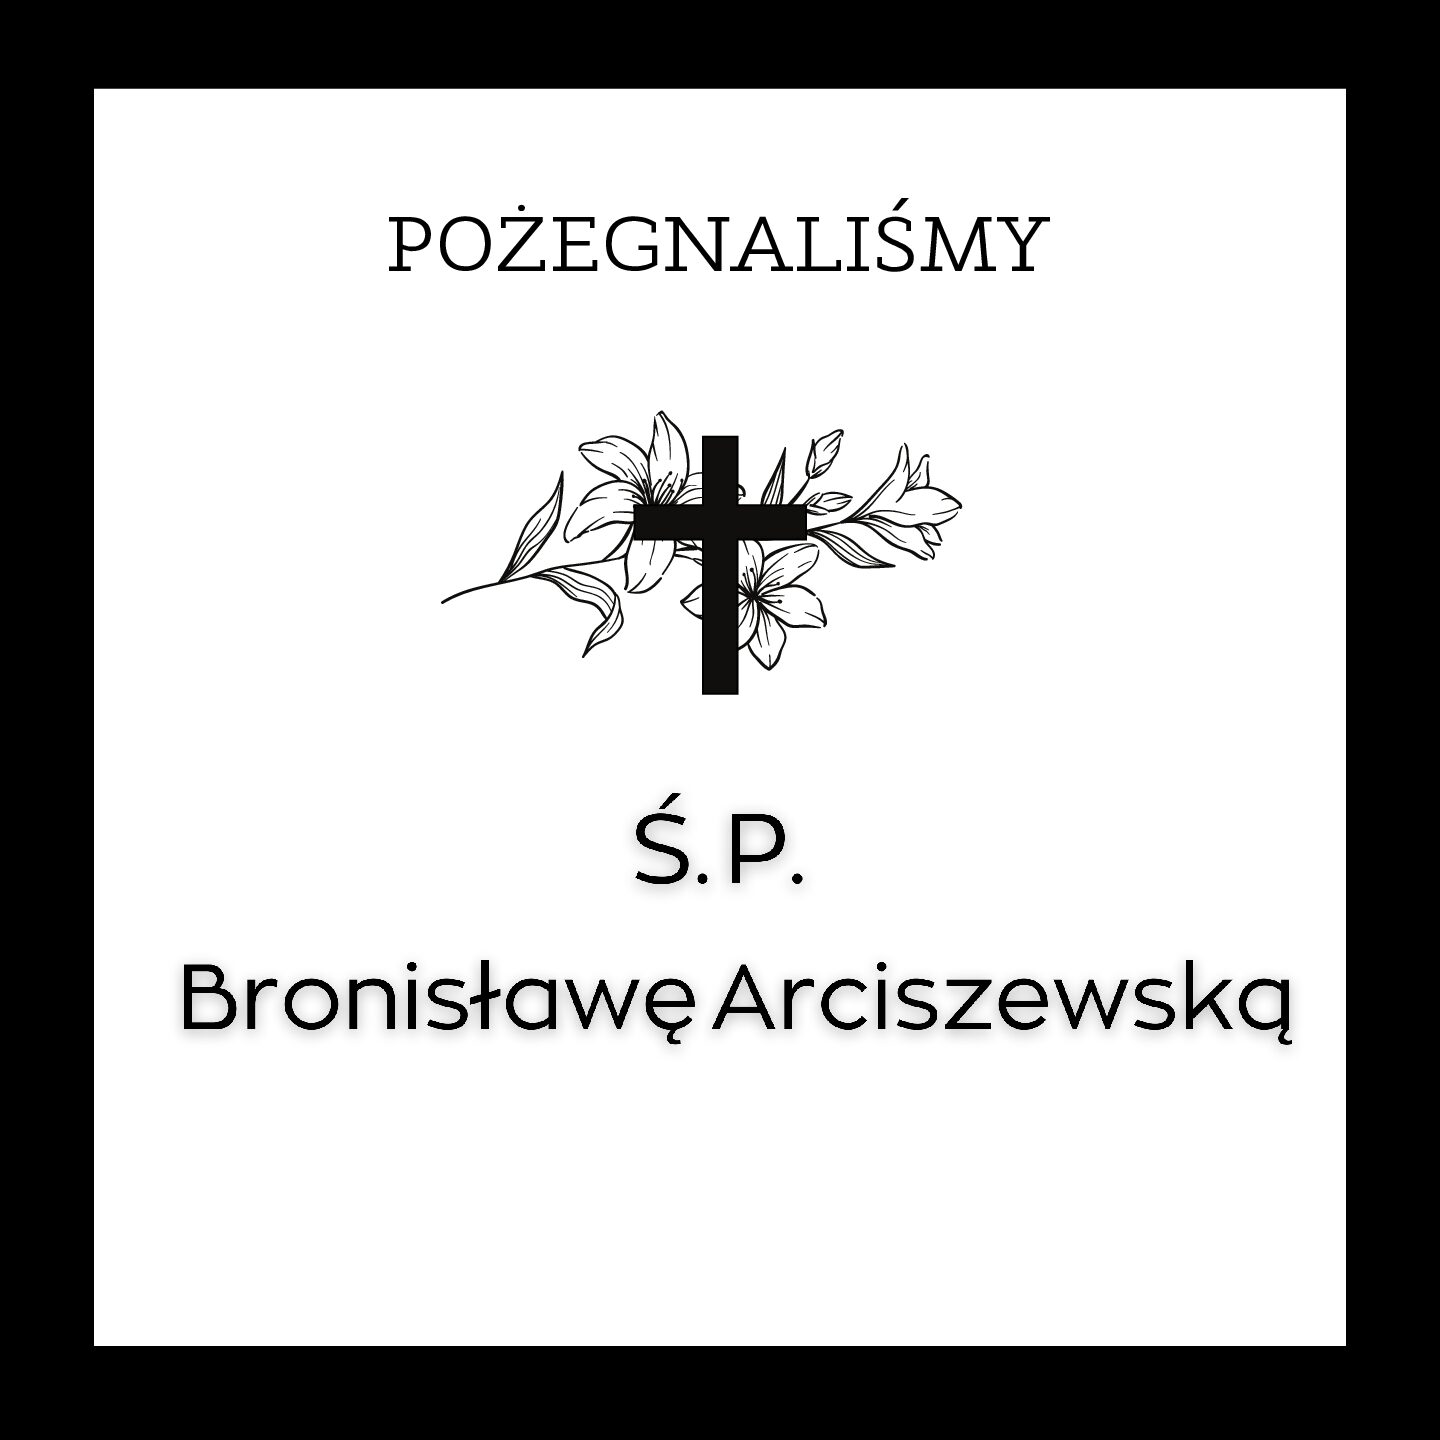 Pożegnaliśmy Panią Bronisławę Arciszewską